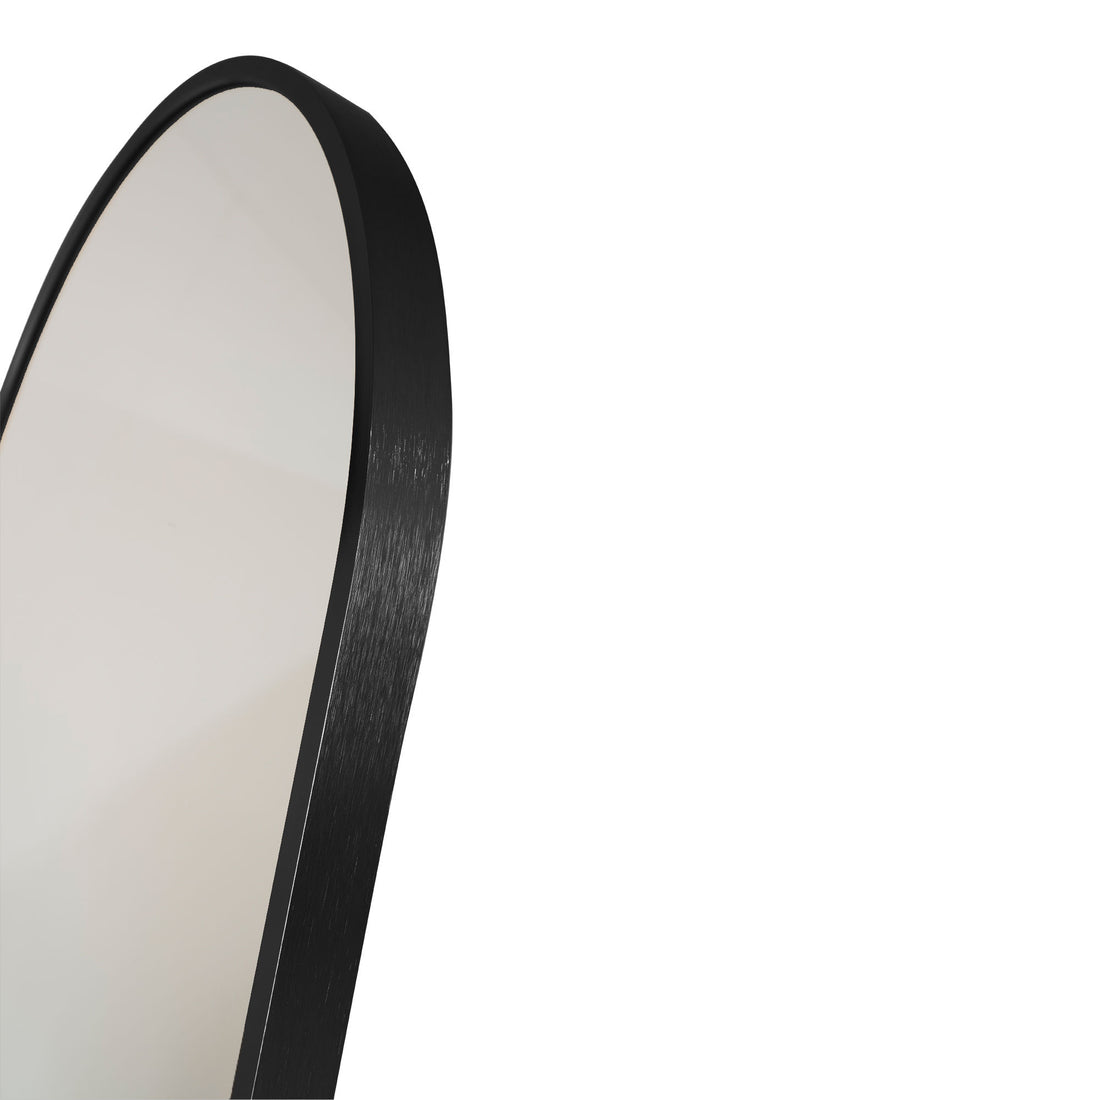 Madrid mirror - mirror in aluminum, black, 40x150 cm - 1 - pcs